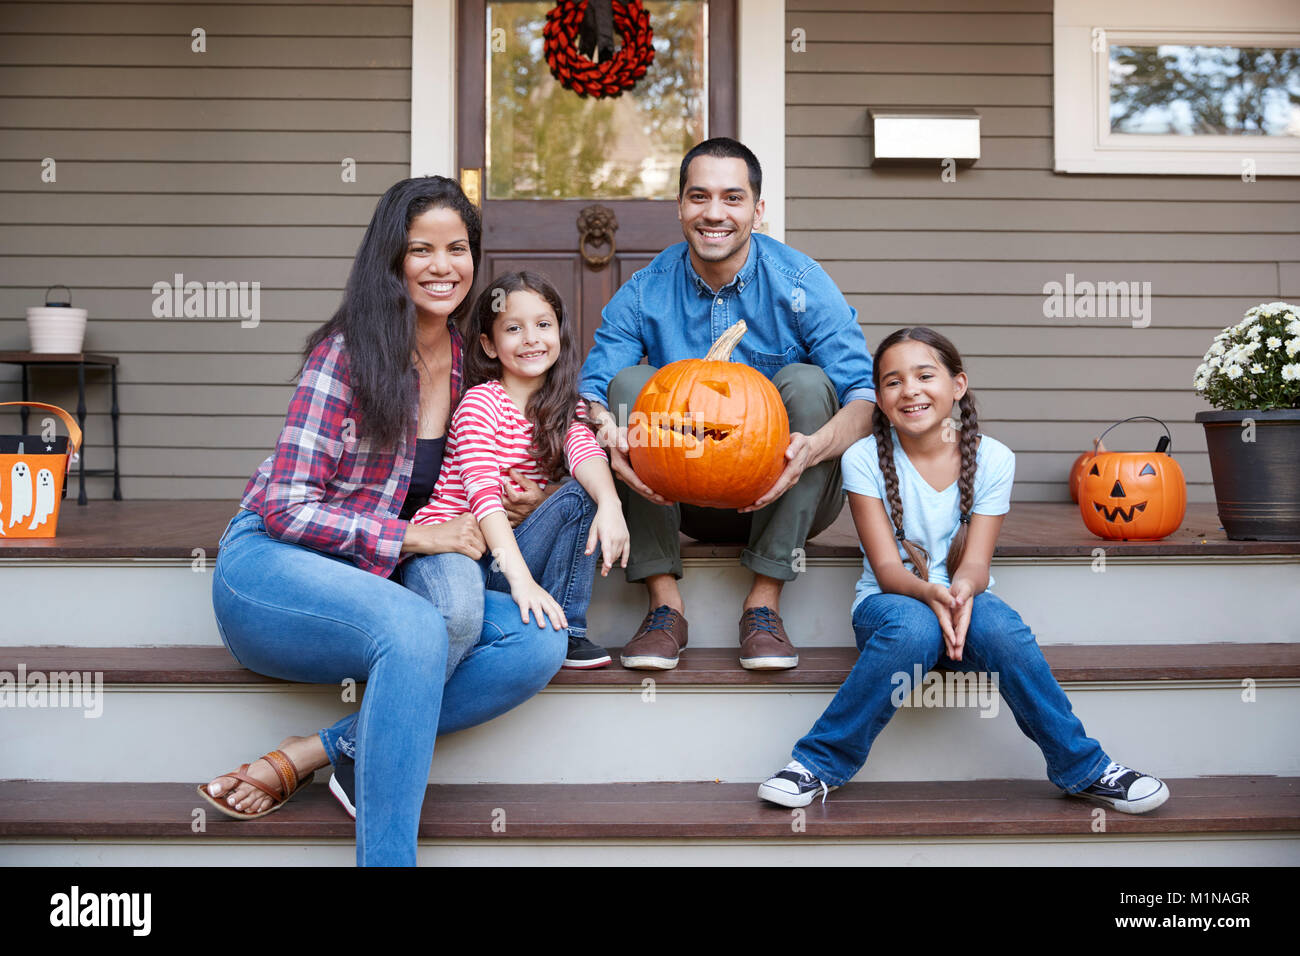 Portrait de famille Halloween Pumpkin Carving sur les étapes de la chambre Banque D'Images